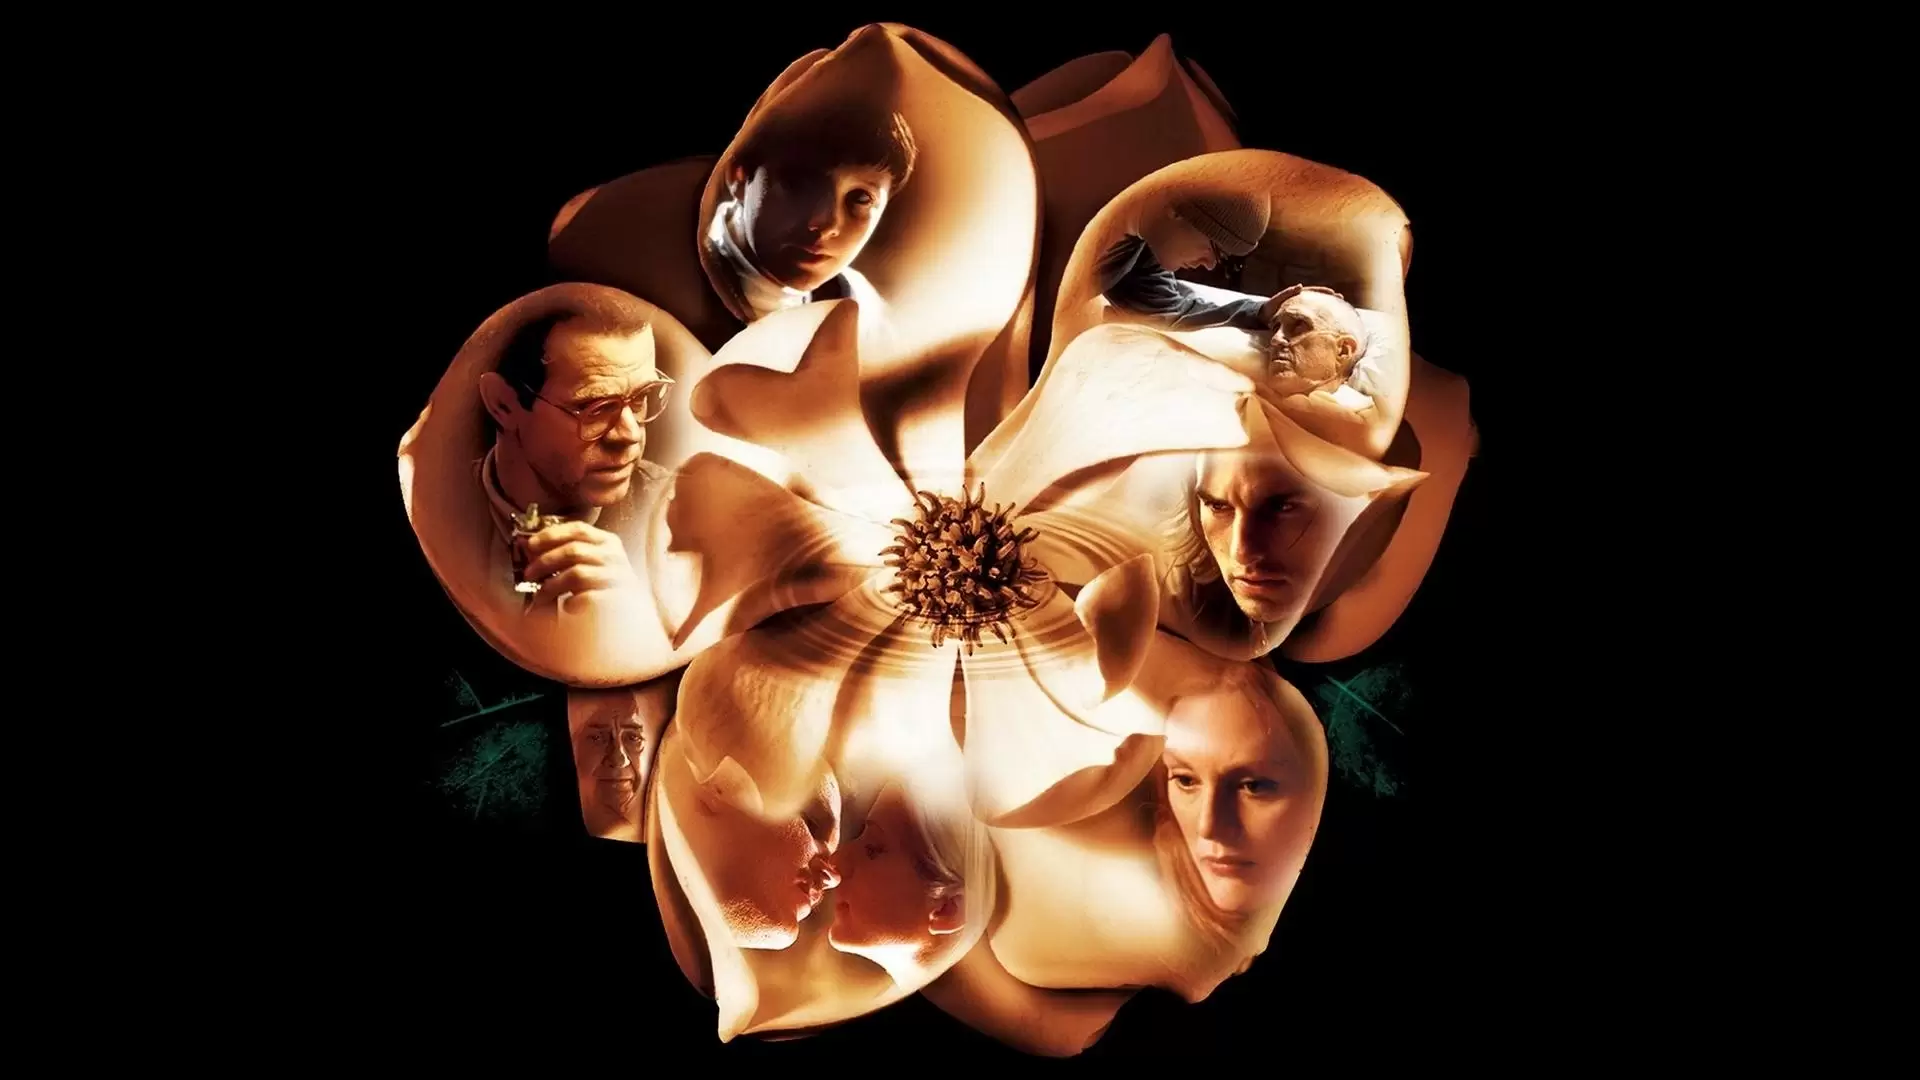 دانلود فیلم Magnolia 1999 (ماگنولیا) با زیرنویس فارسی و تماشای آنلاین